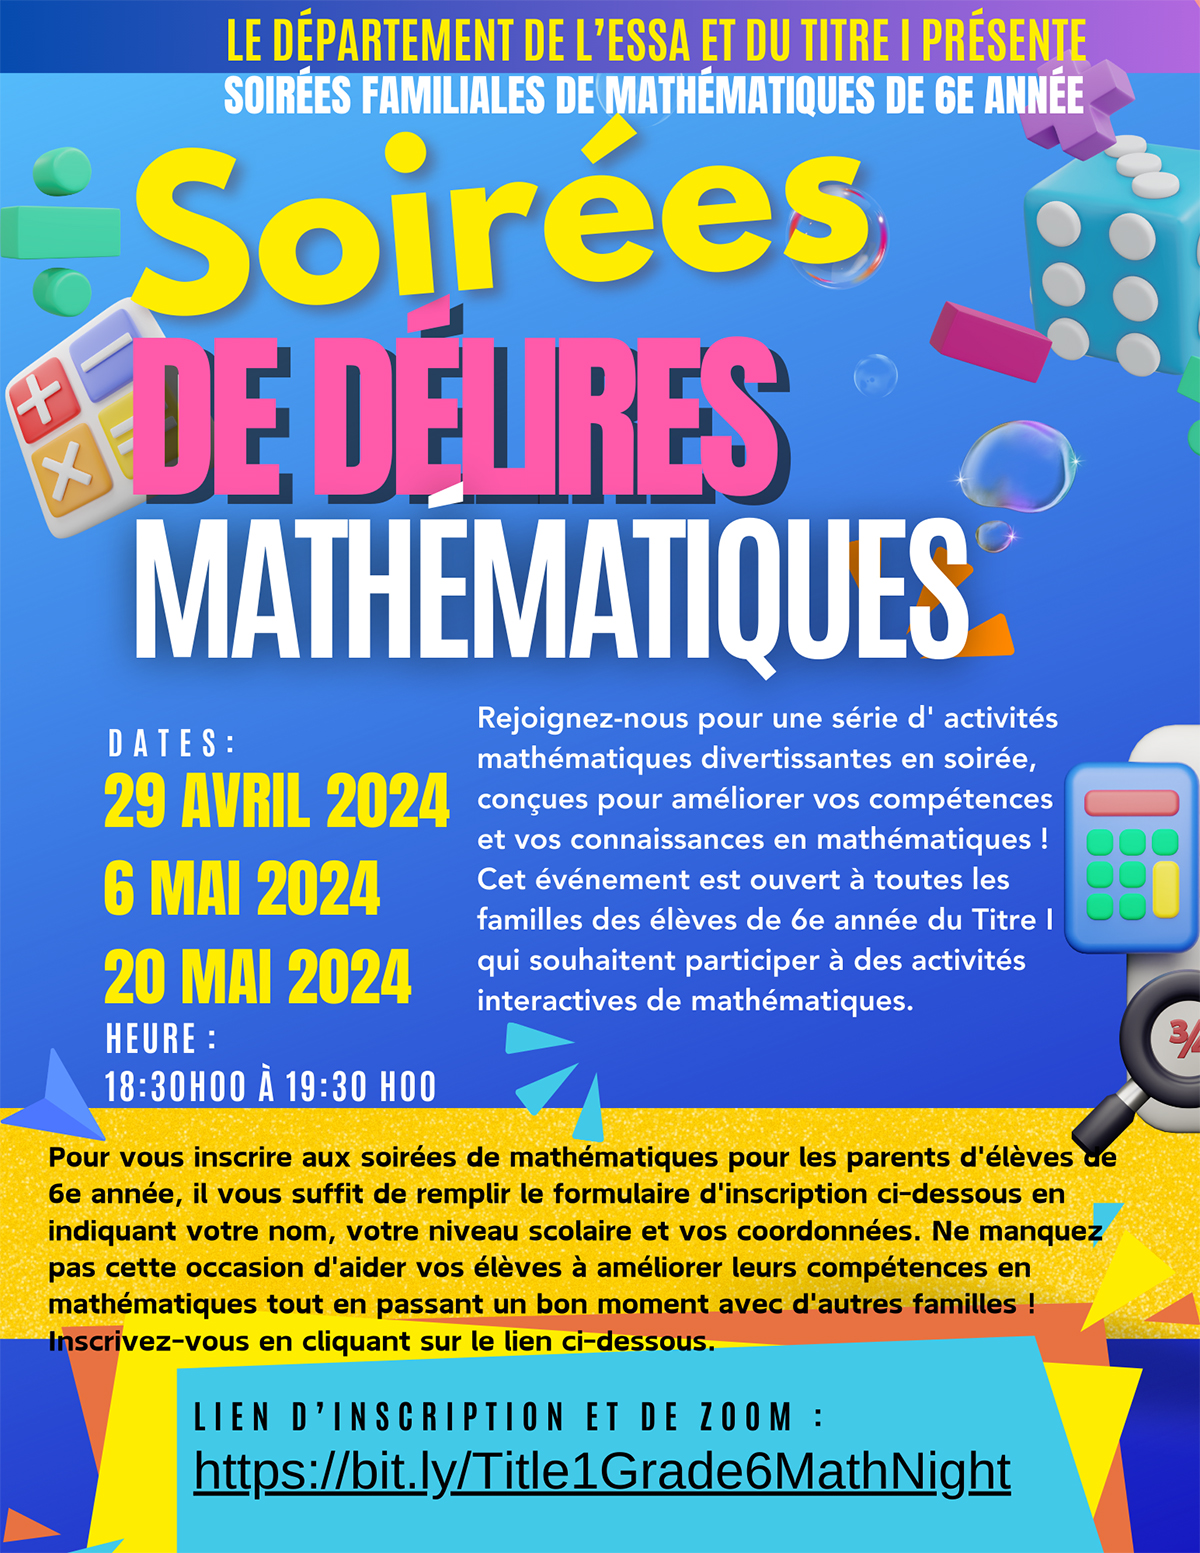 Math-Mania-Flyer-French.jpg